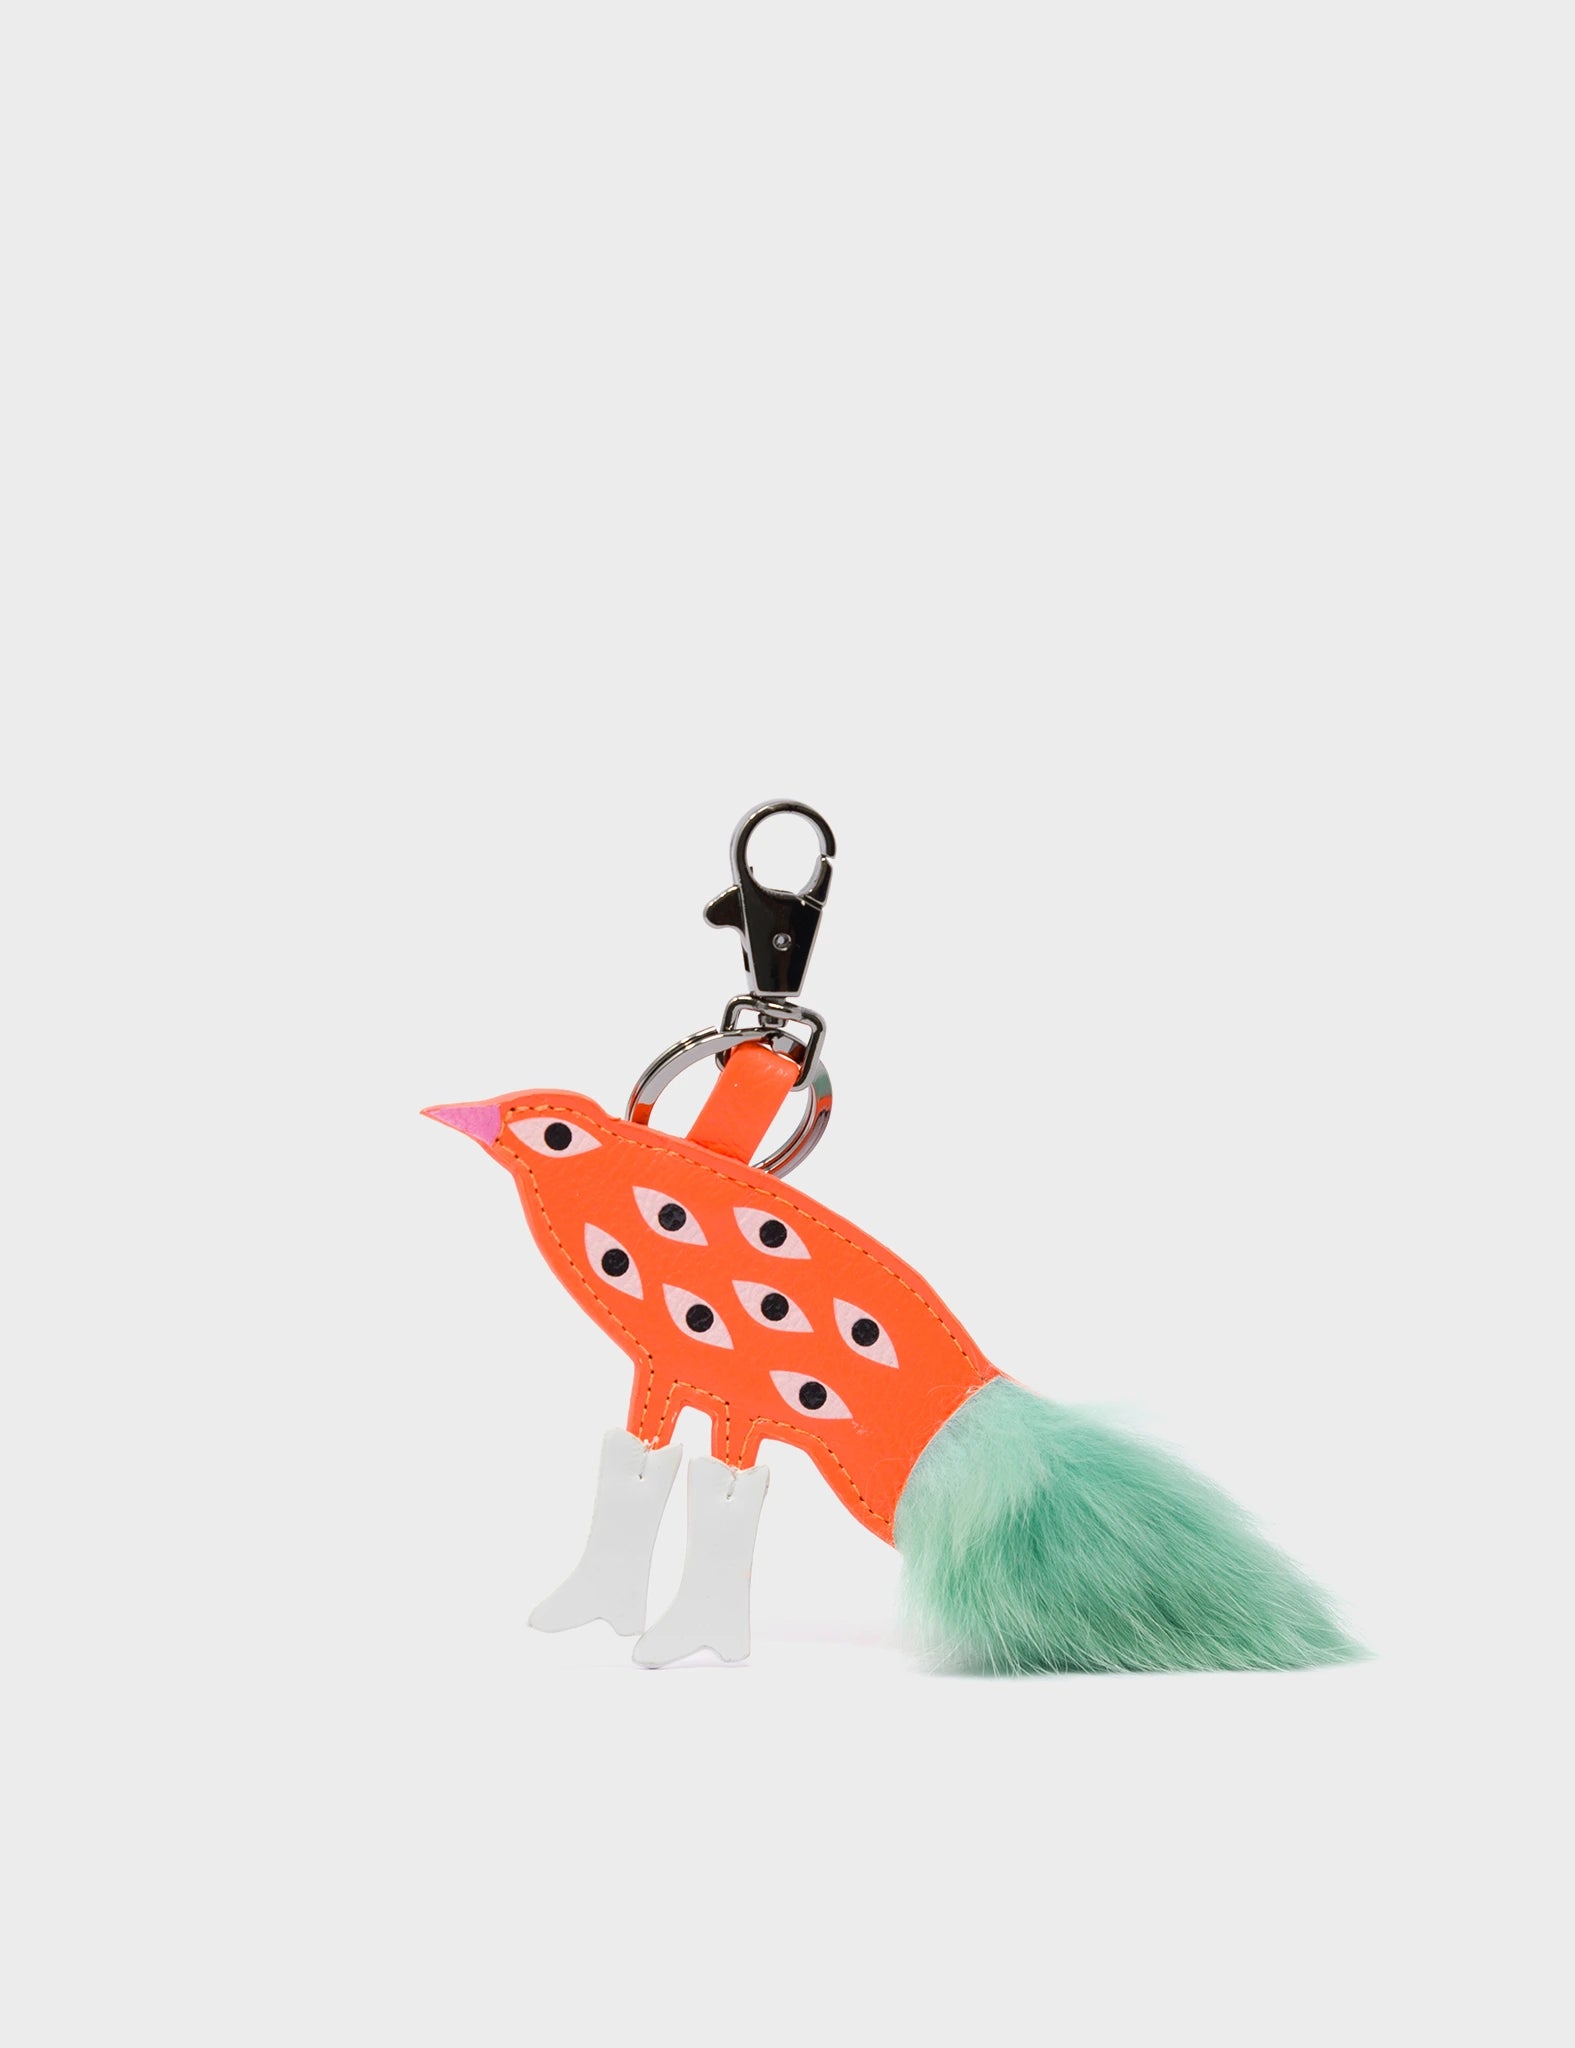 Bird In Boots Charm - Neon Orange Leather Keychain